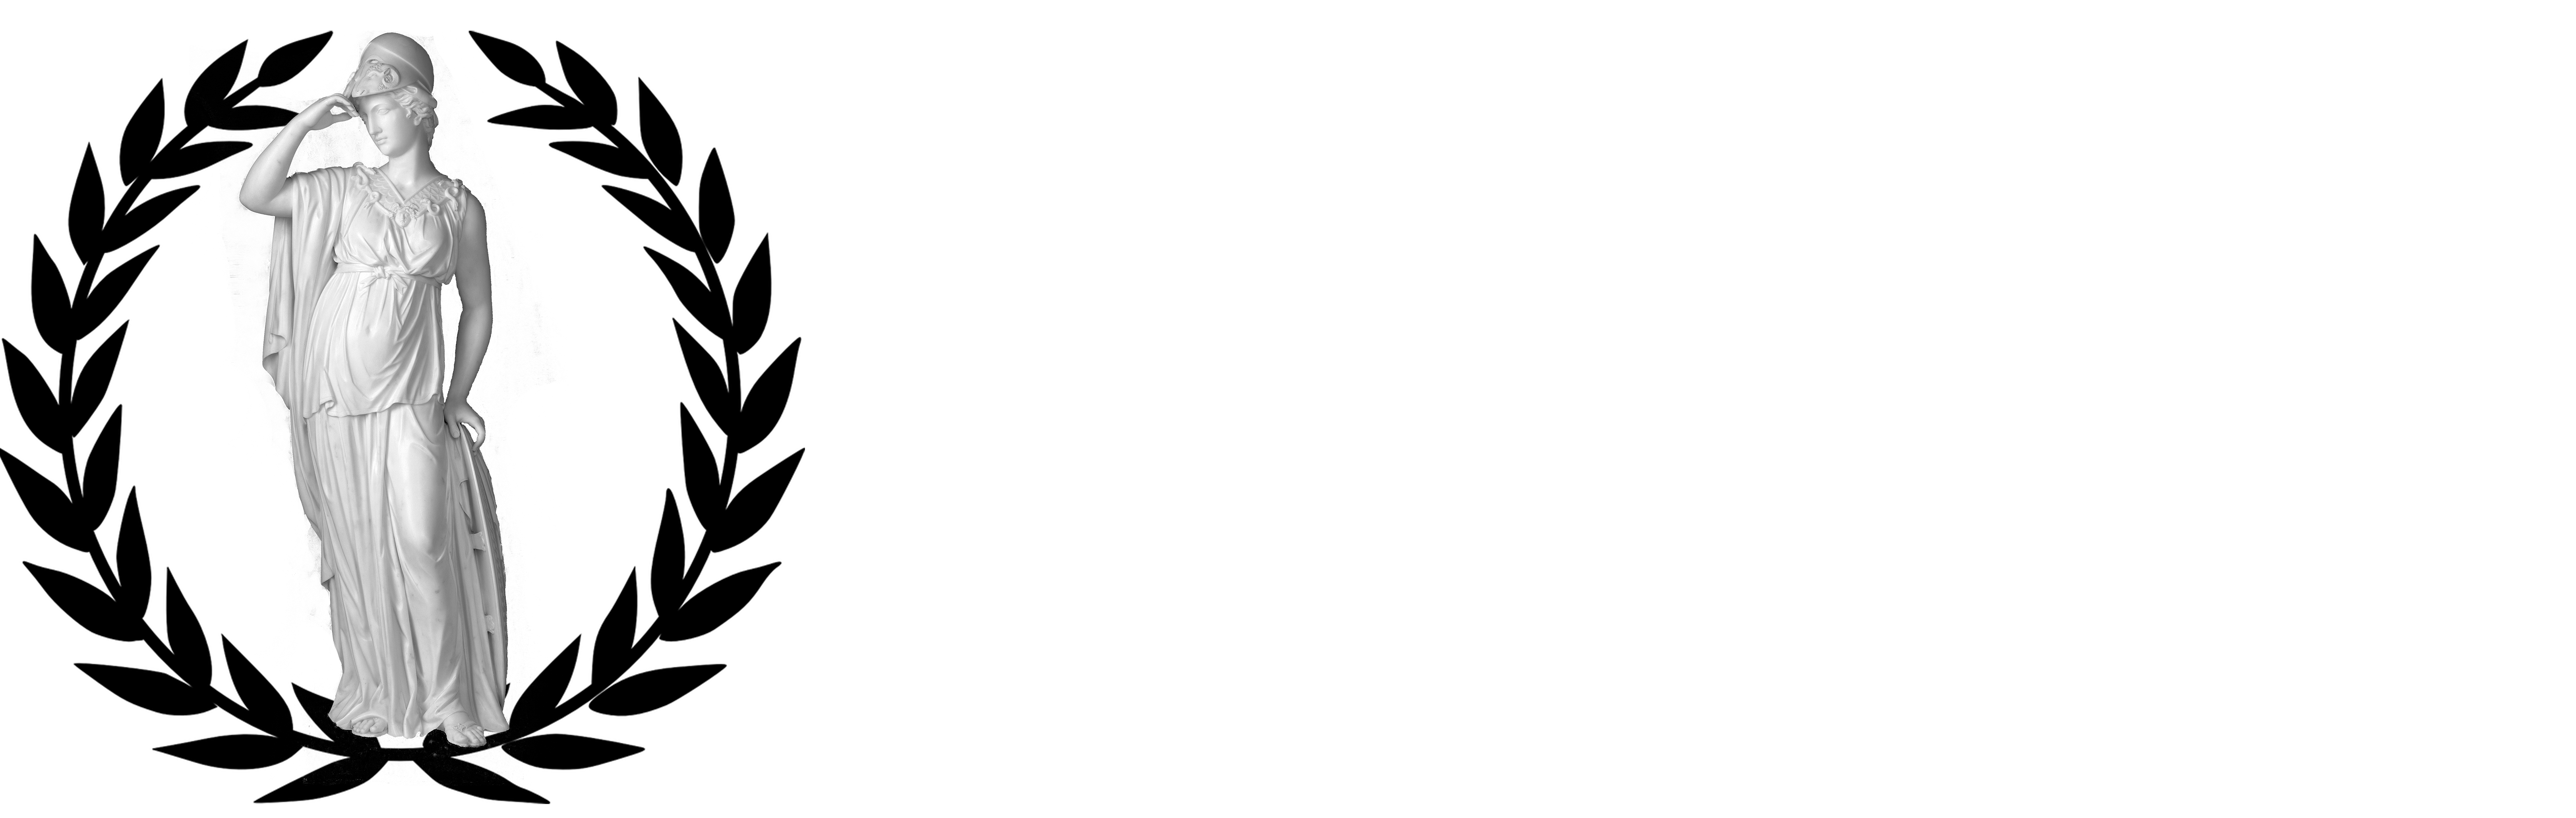 Study with Athena